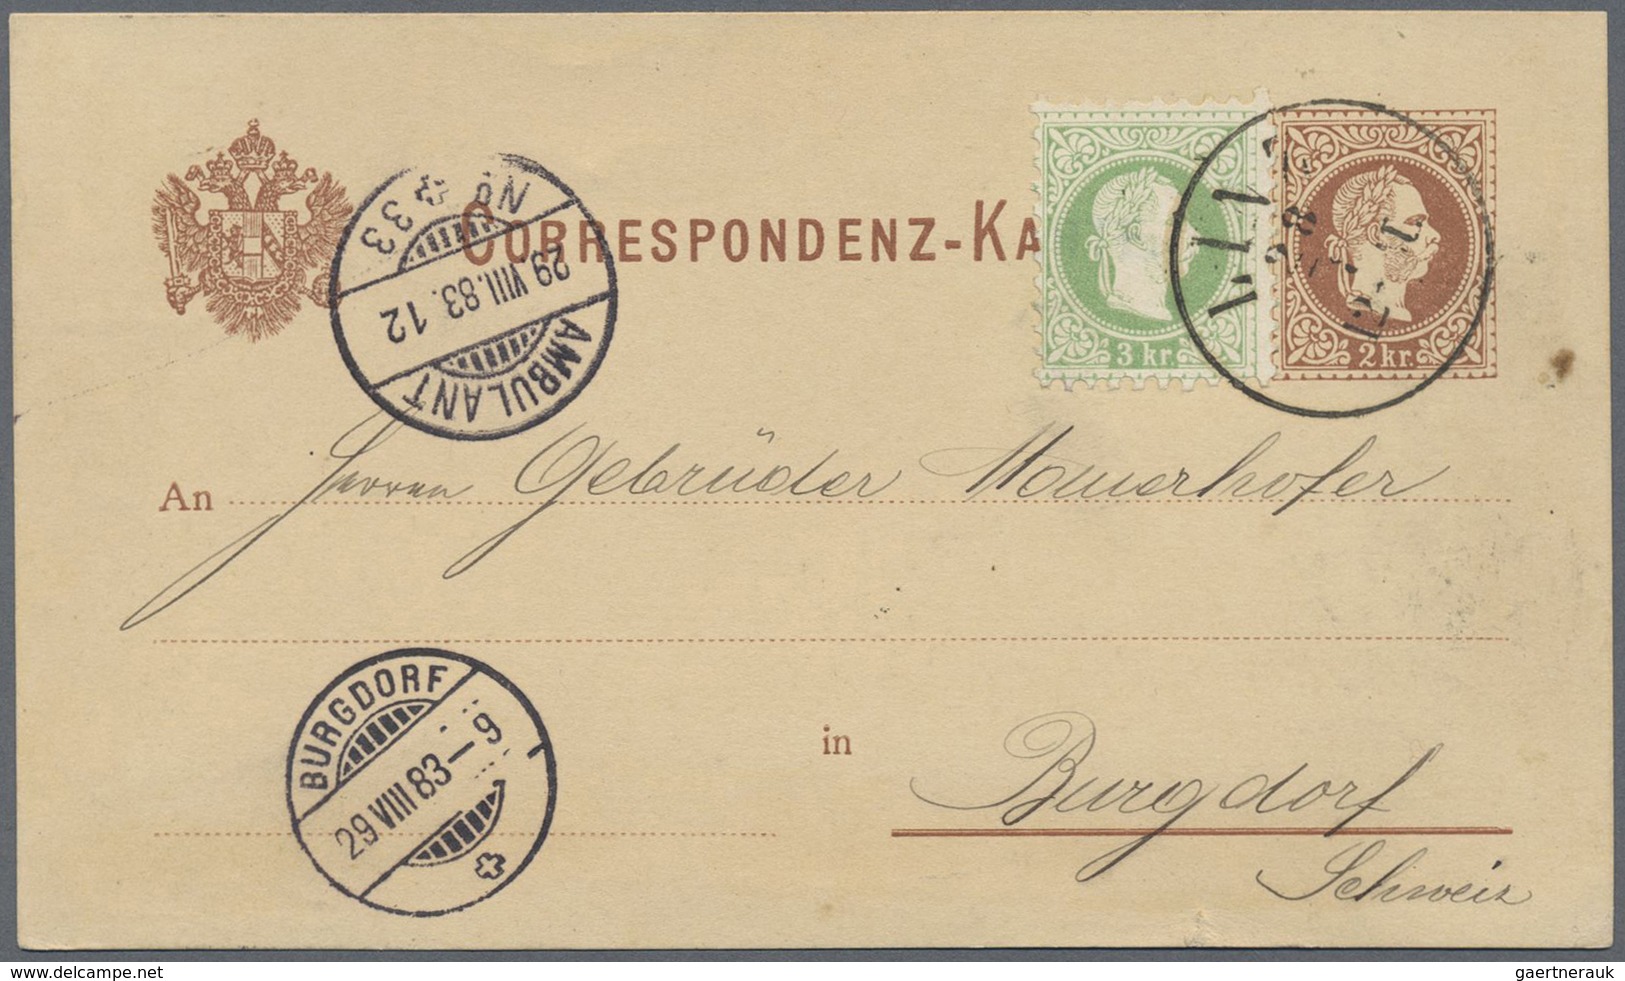 GA Österreich - Ganzsachen: 1877/1883, fünf Correspondenzkarten 2 Kr. braun (4 x deutsch, 1 x slowen.)